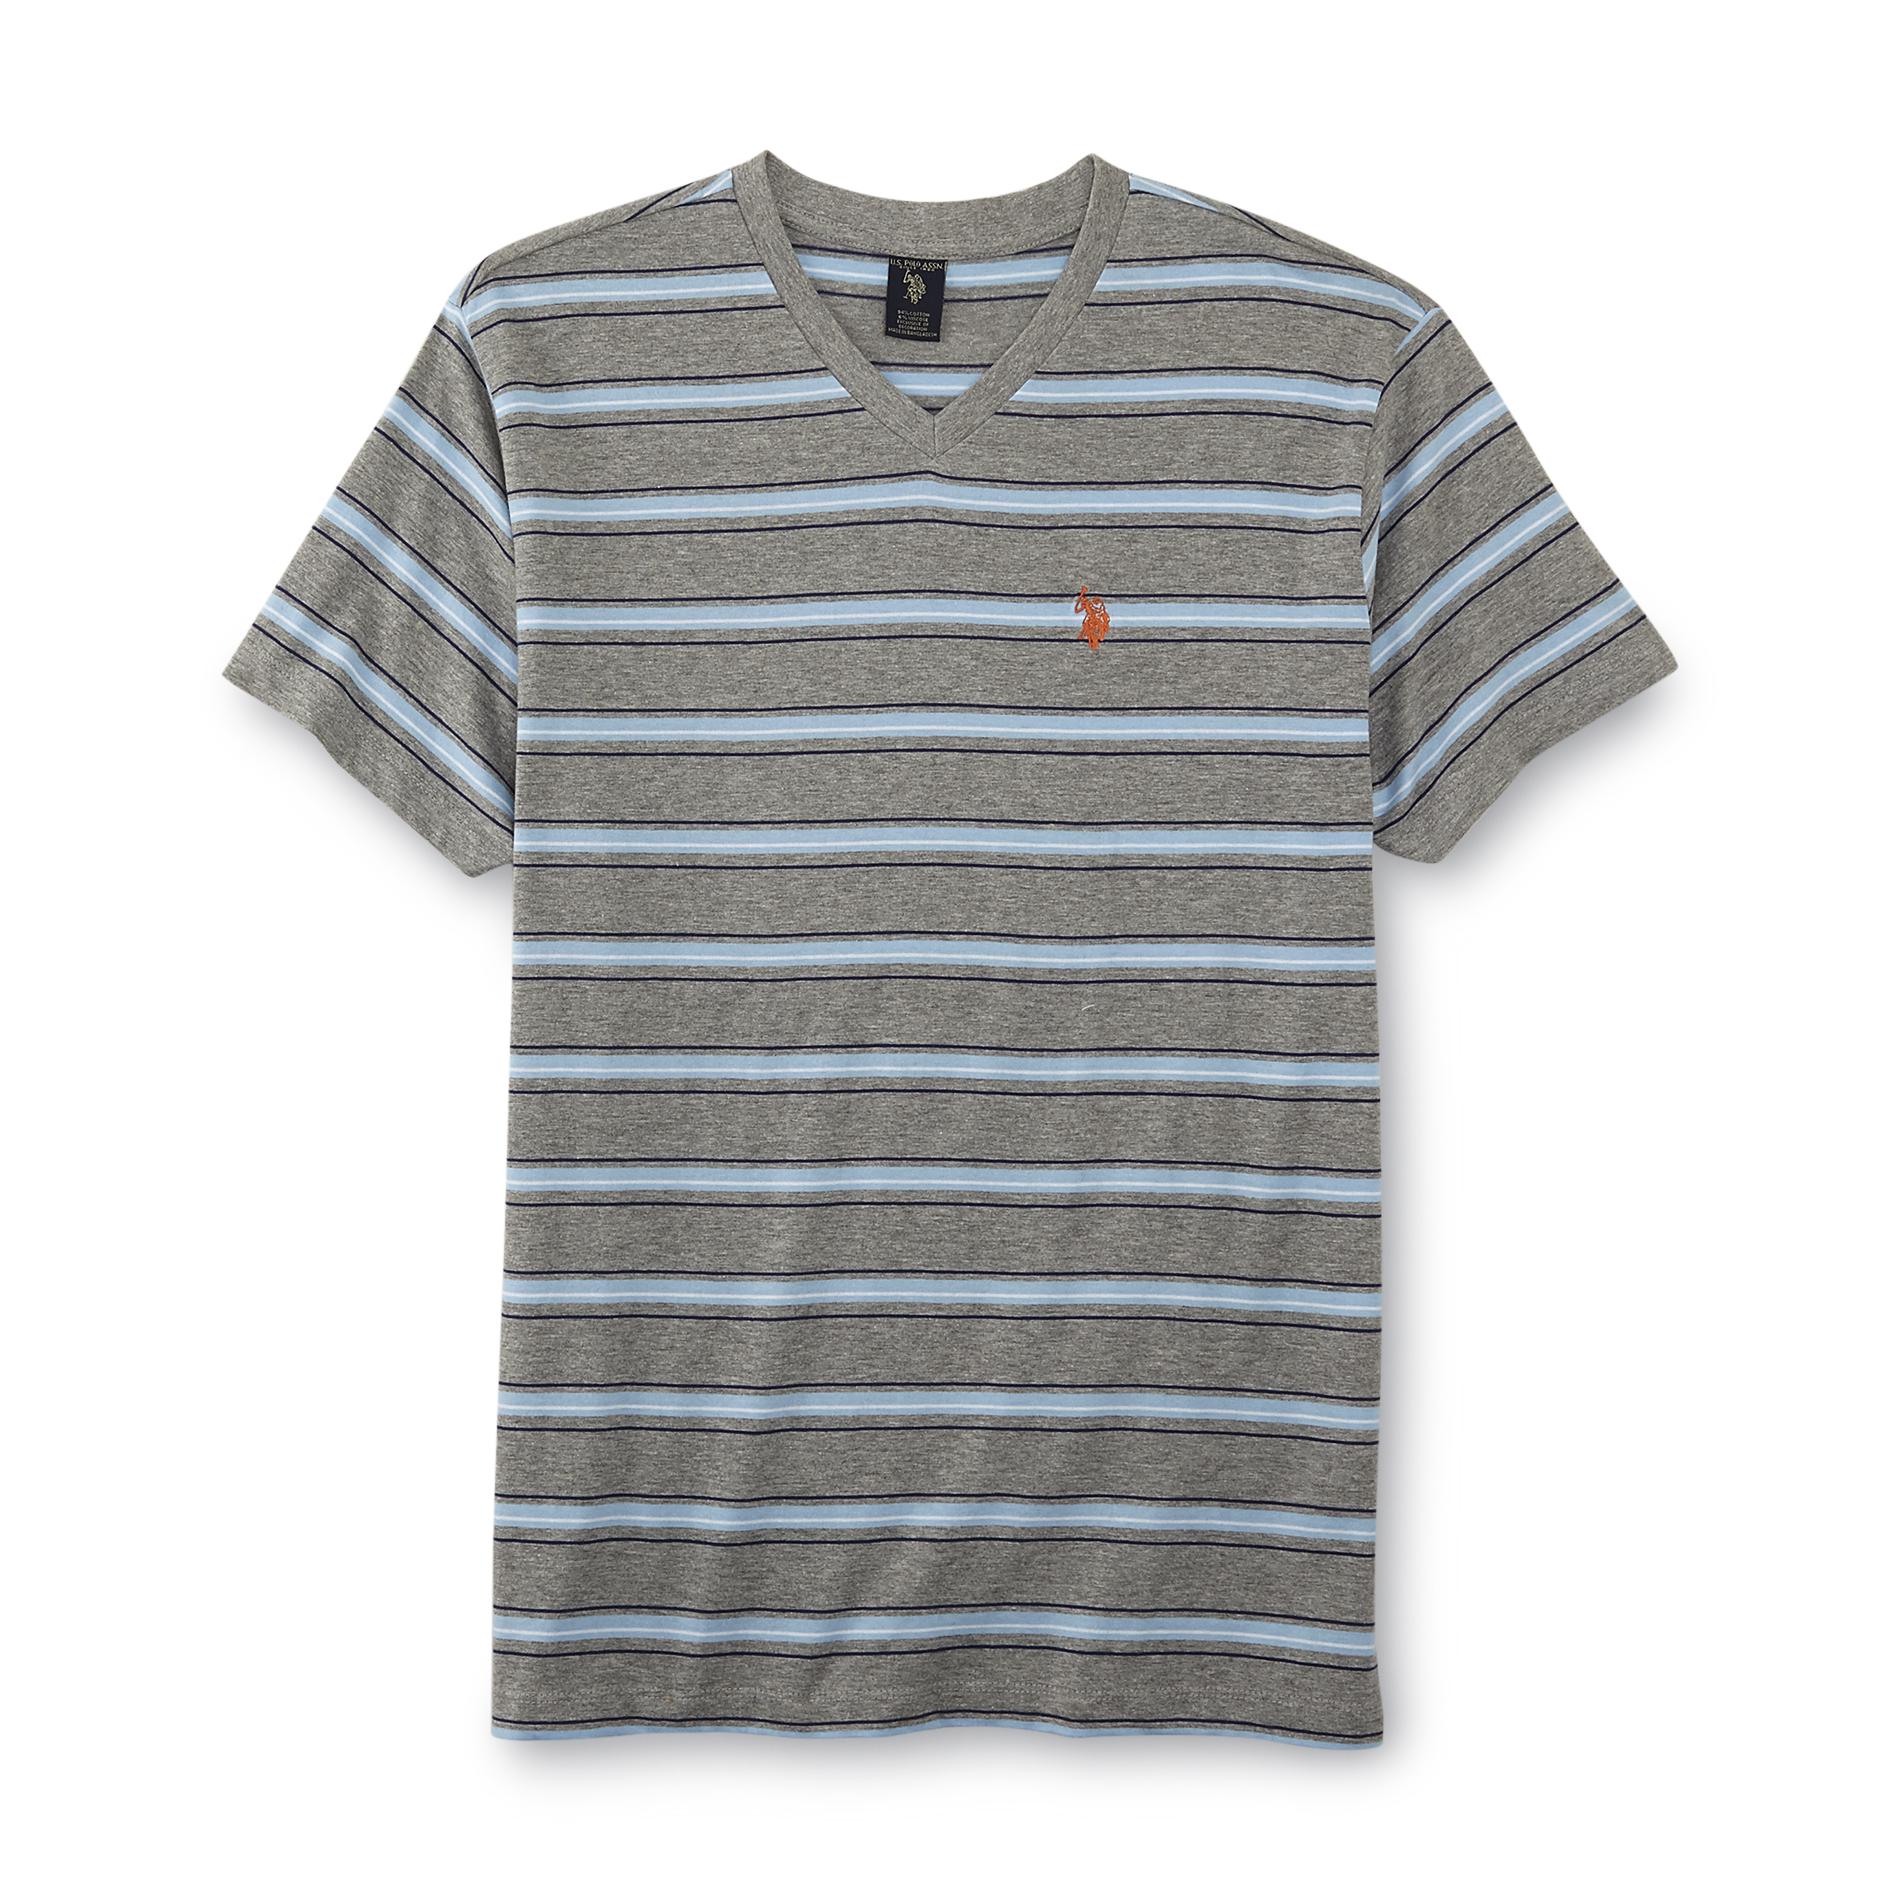 U.S. Polo Assn. Men's Jersey Knit T-Shirt - Striped